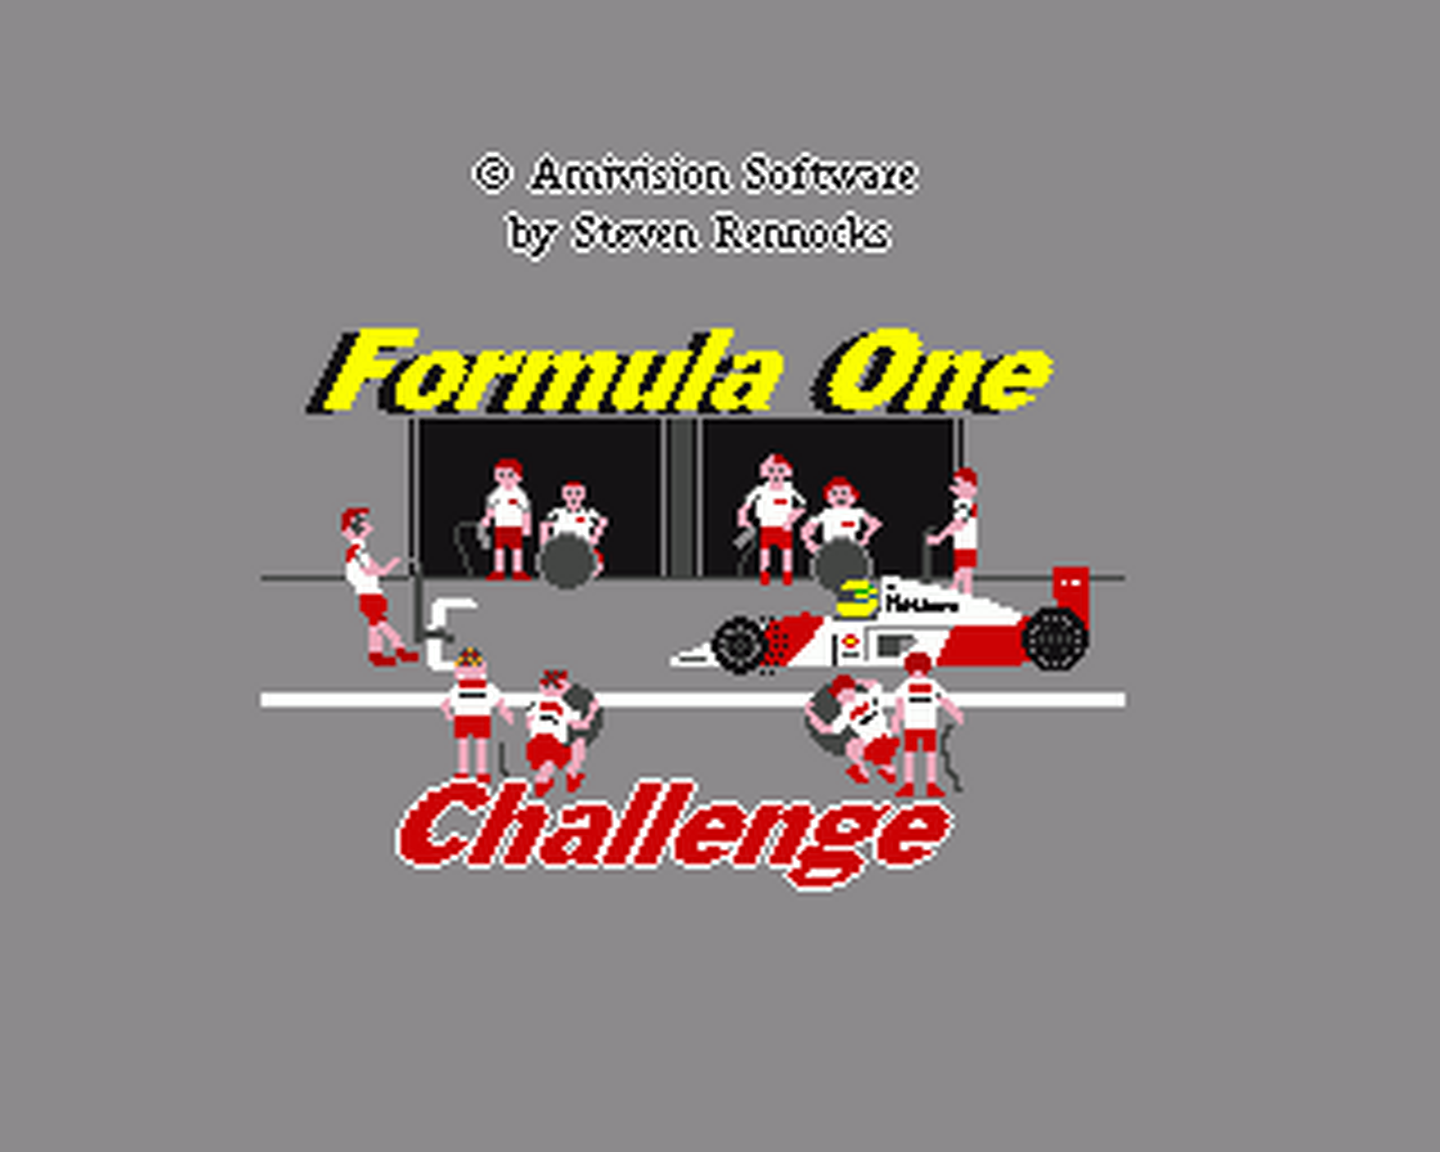 Amiga GameBase Formula_One_Challenge Amivision 1993